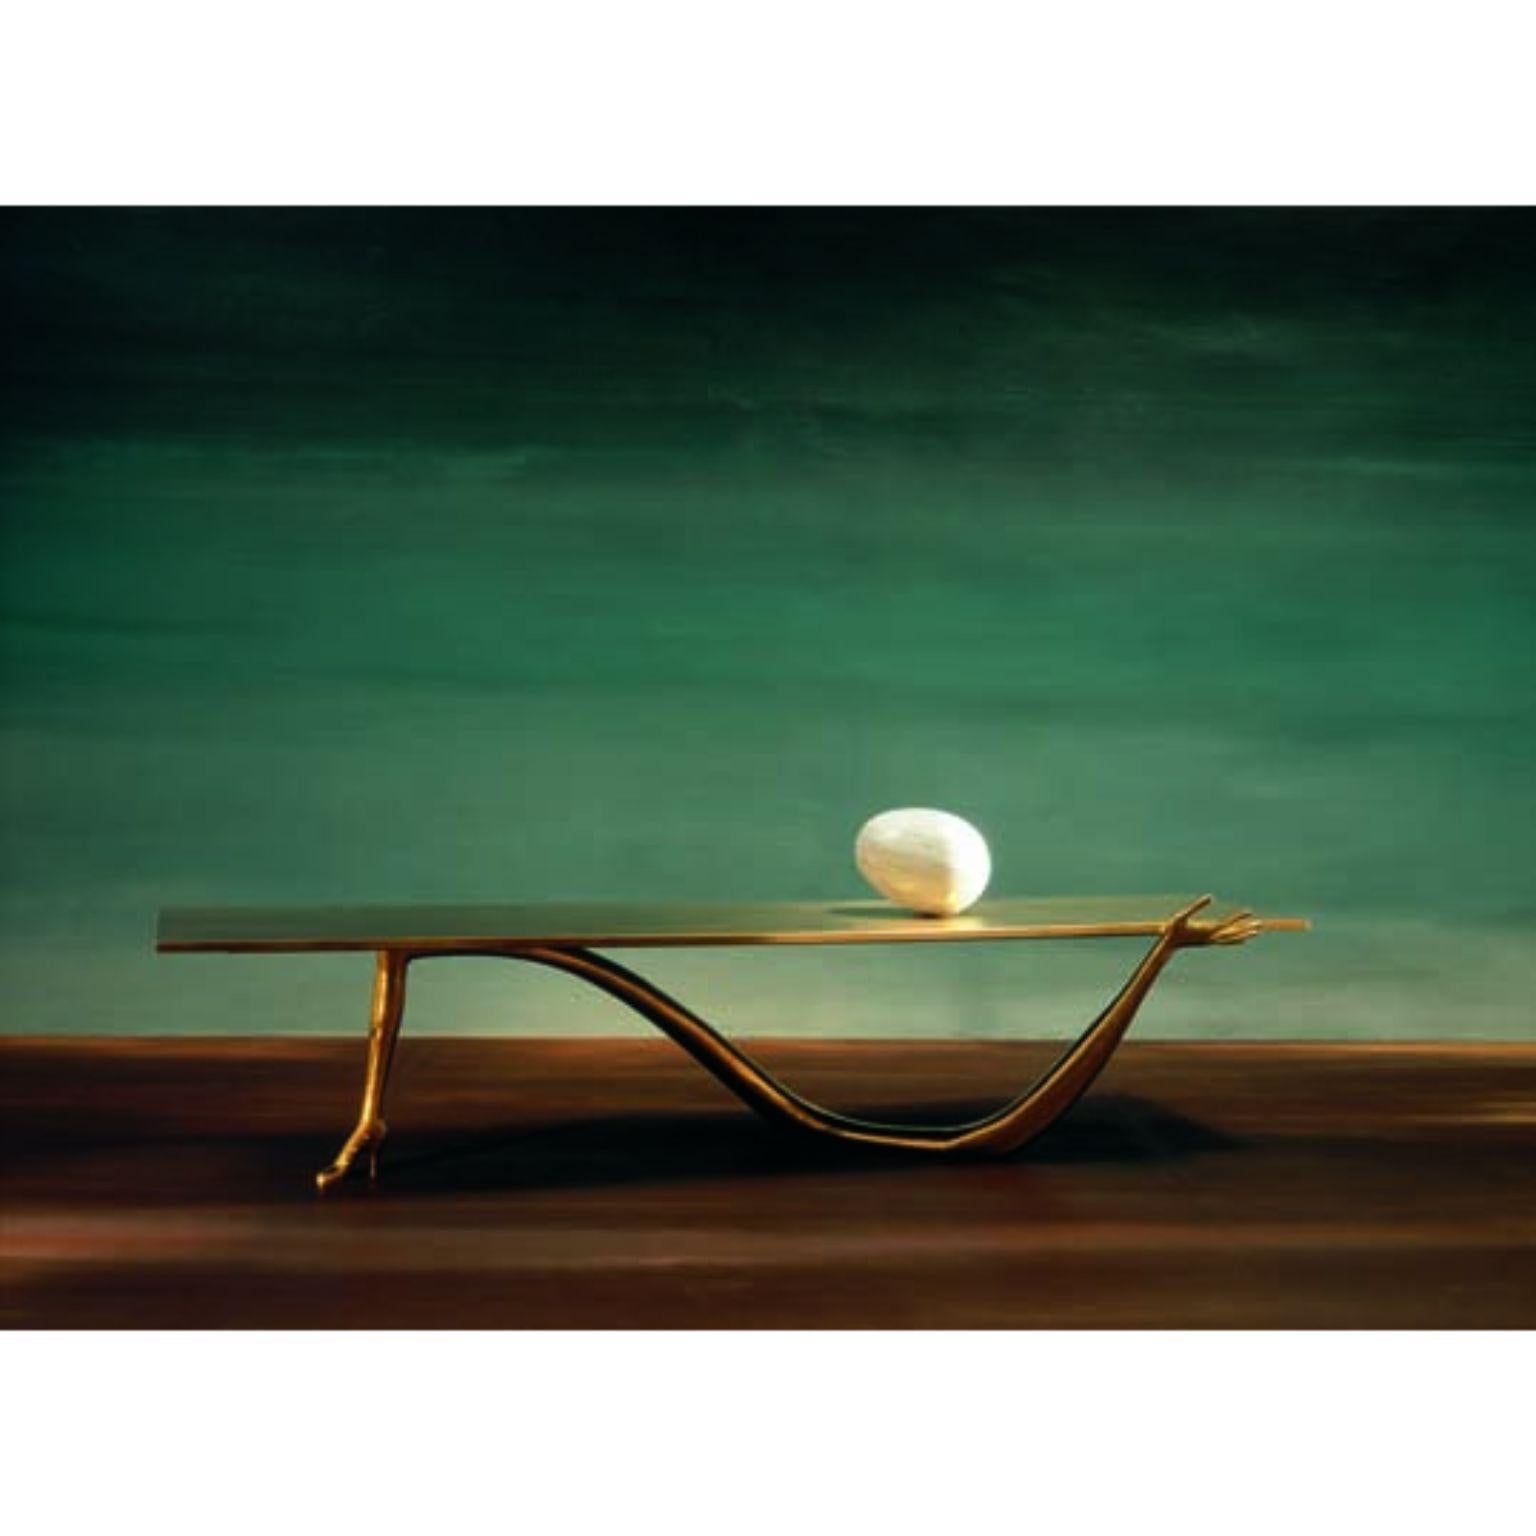 Table basse Leda, Salvador Dalí 
Design/One inspiré d'une œuvre d'art de Salvador Dalí
Dimensions : 51 x 190 x 61 H cm
MATERIAL : laiton, marbre

Design/One inspiré d'une œuvre d'art de Salvador Dalí : Femme à tête de roses